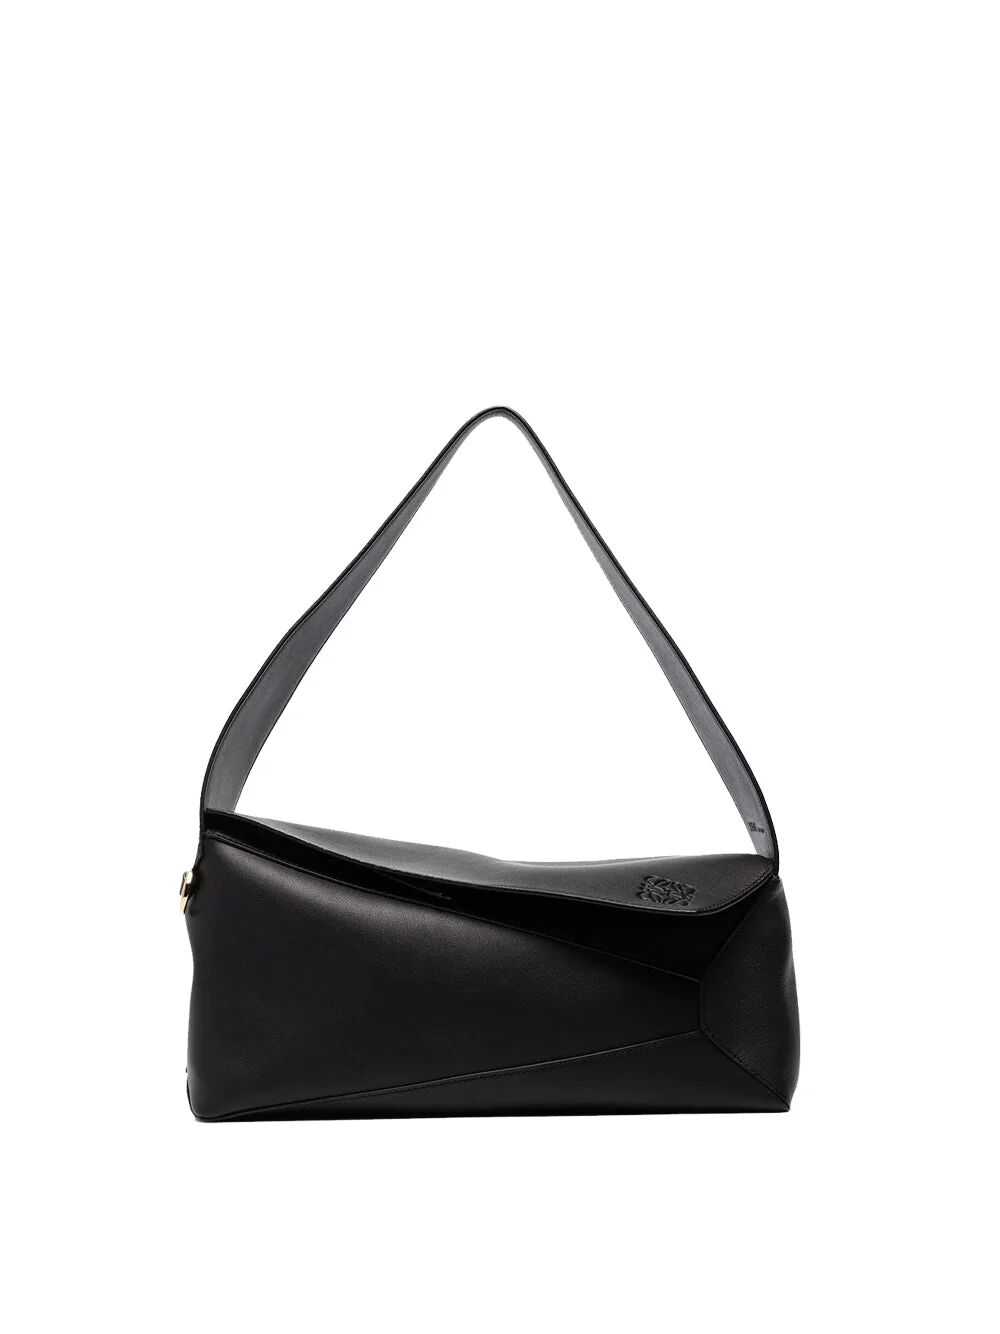 Loewe Women's Puzzle Hobo Nappa Bag in Black